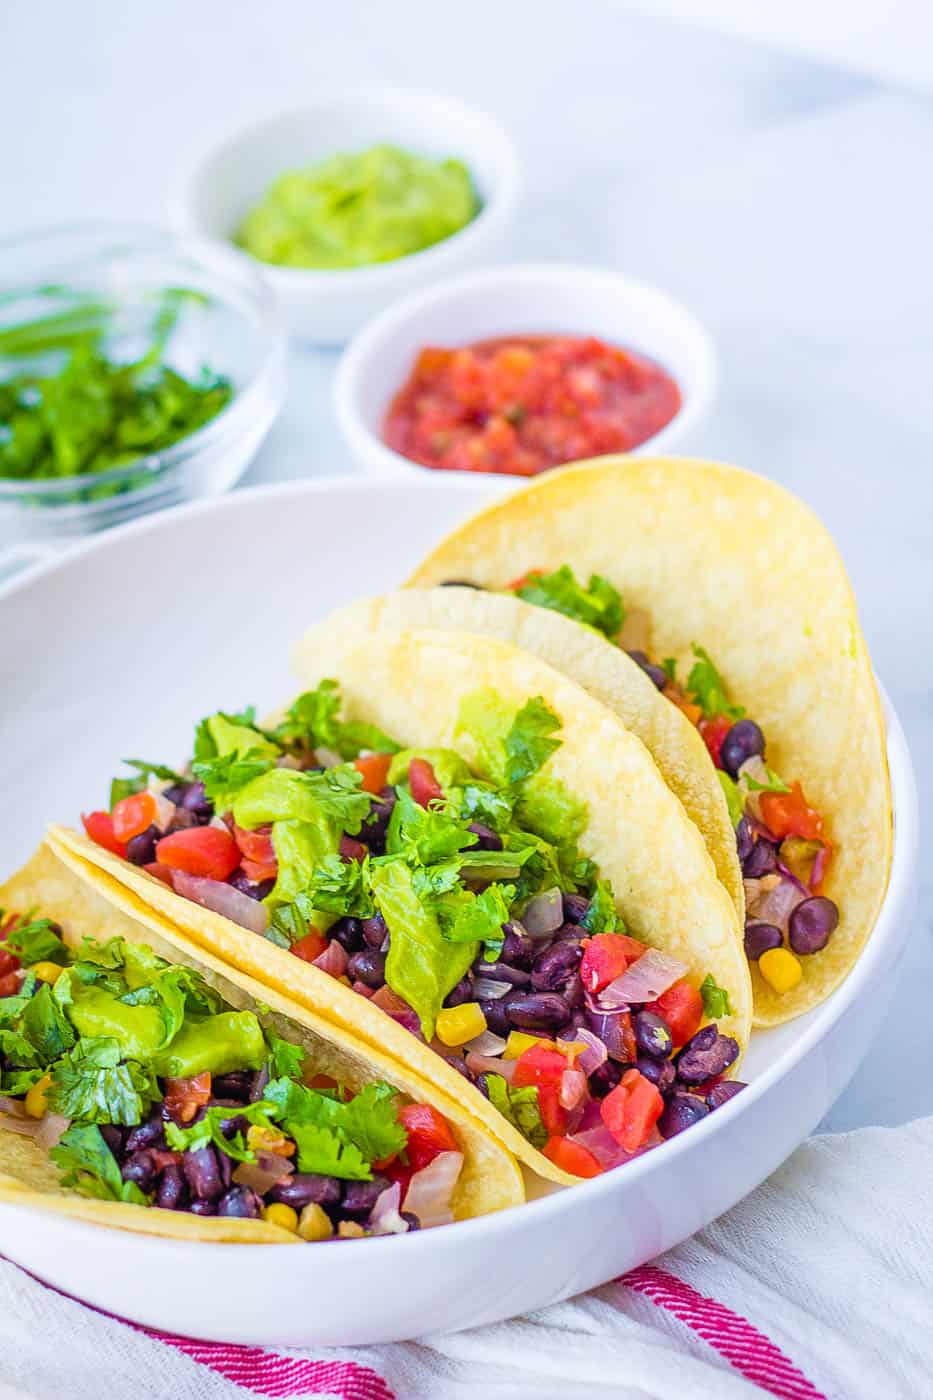 tacos végétaliens avec haricots noirs, avocat, légumes et coriandre, servis sur une assiette blanche